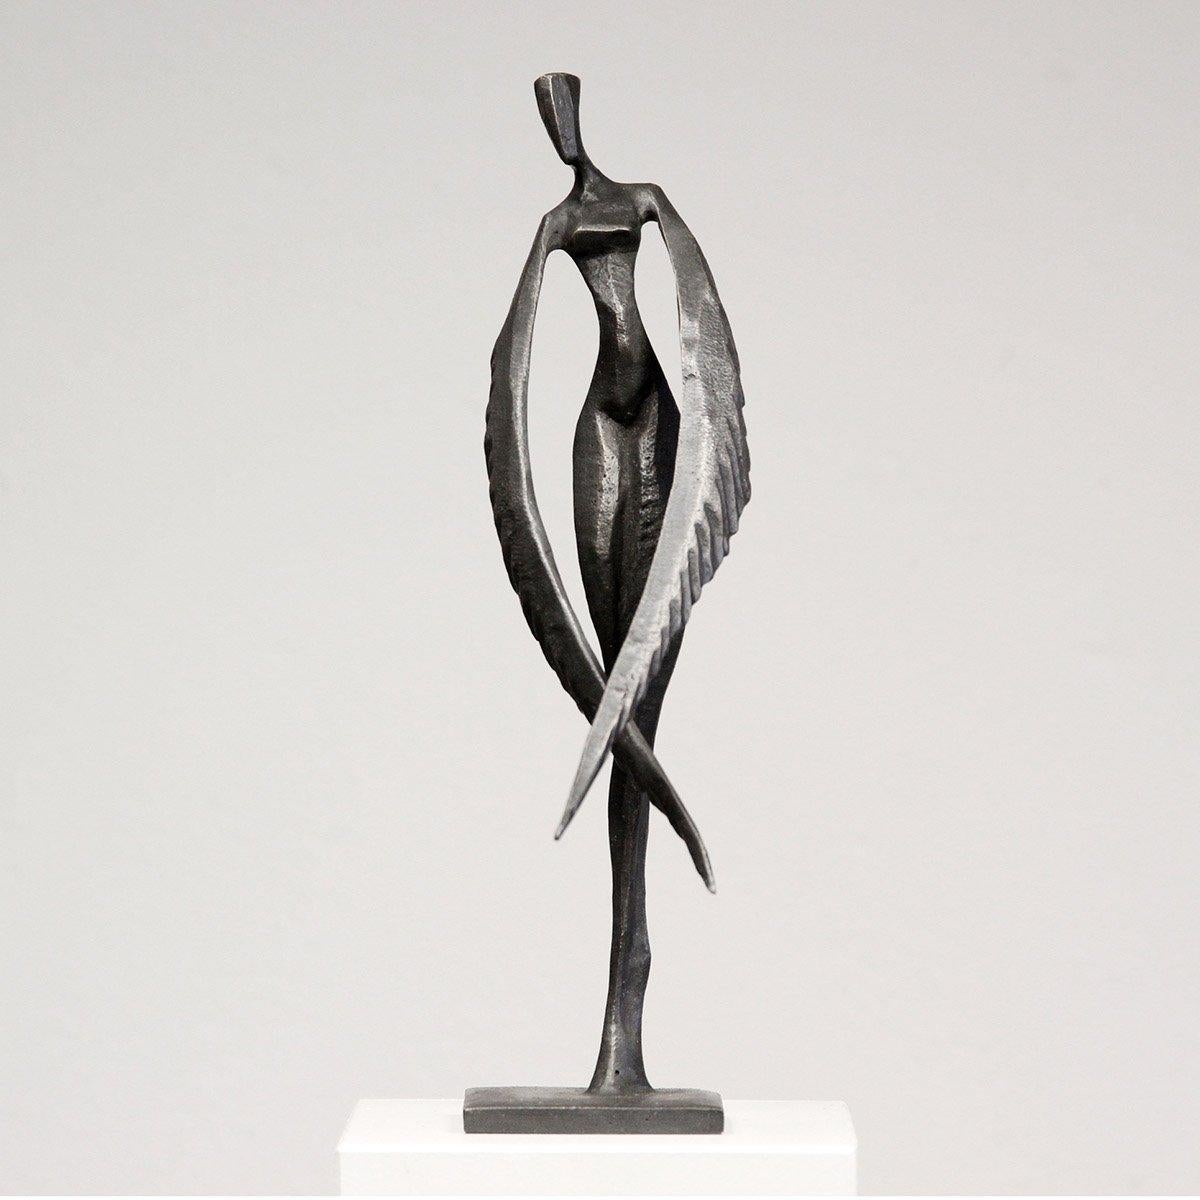 Fleur - Charlotte ist eine elegante figurative Bronzeskulptur von Nando Kallweit.

Inspiriert von der Legende des Phönix, hat diese weibliche Figur anmutige Flügel anstelle von Armen.  Das Stück und sein Doppelname spielen auf die Kraft und die